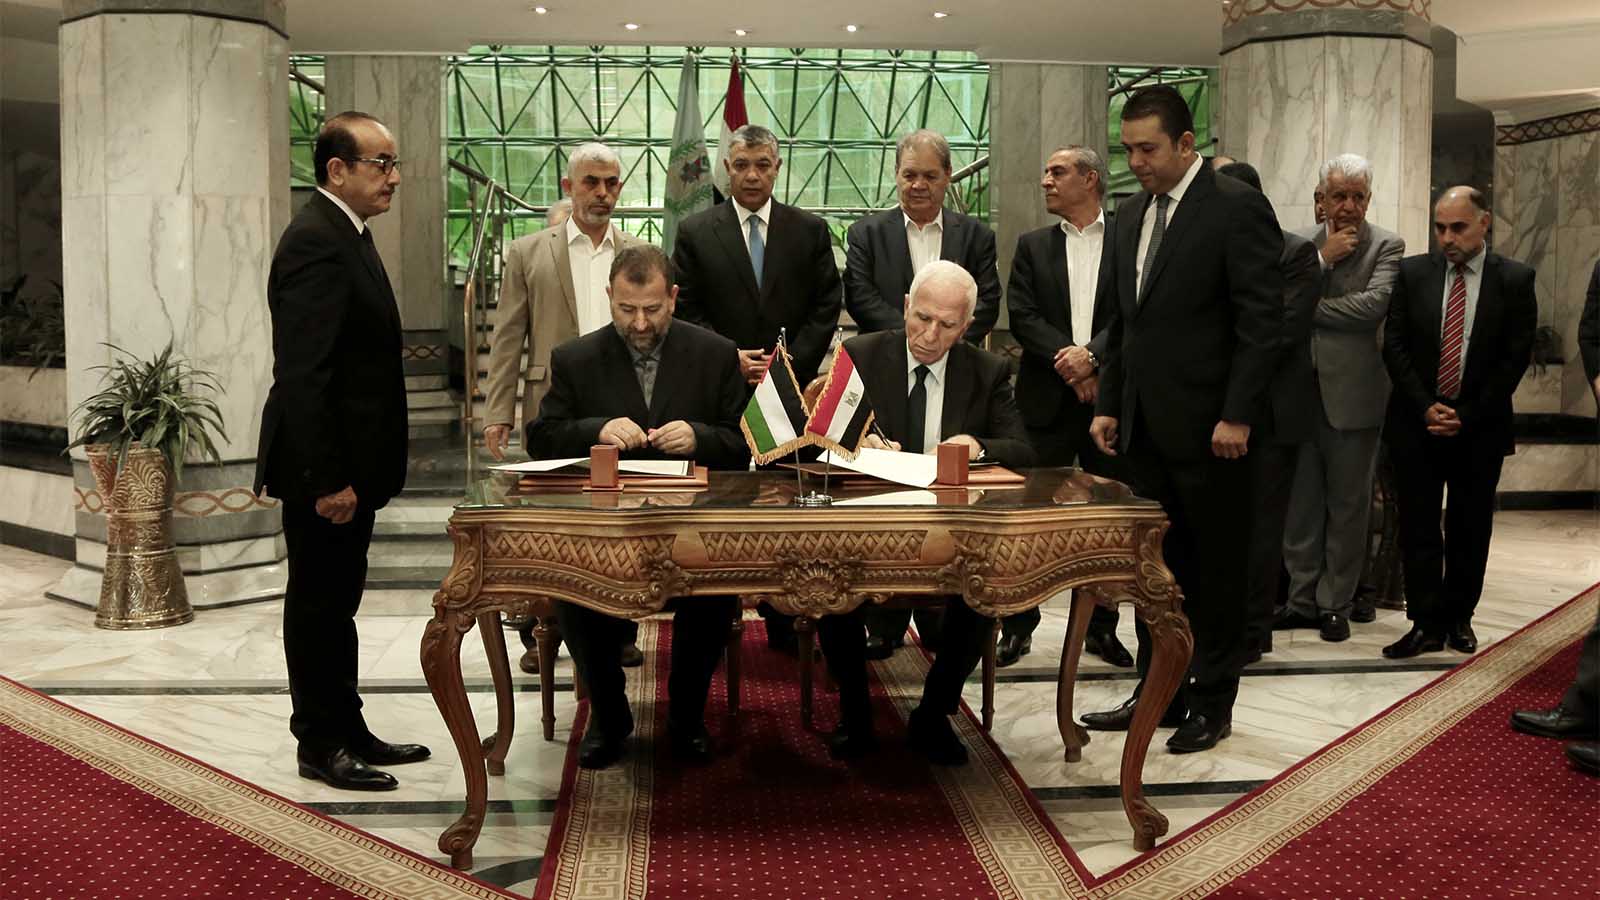 נציג פת&quot;ח עזאם אל אחמד ונציג חמאס סאלח אל ערורי חותמים על הסכם הפיוס בין חמאס לפת&quot;ח במצרים. 12 באוקטובר 2017 (צילום: AP Photo/Nariman El-Mofty)